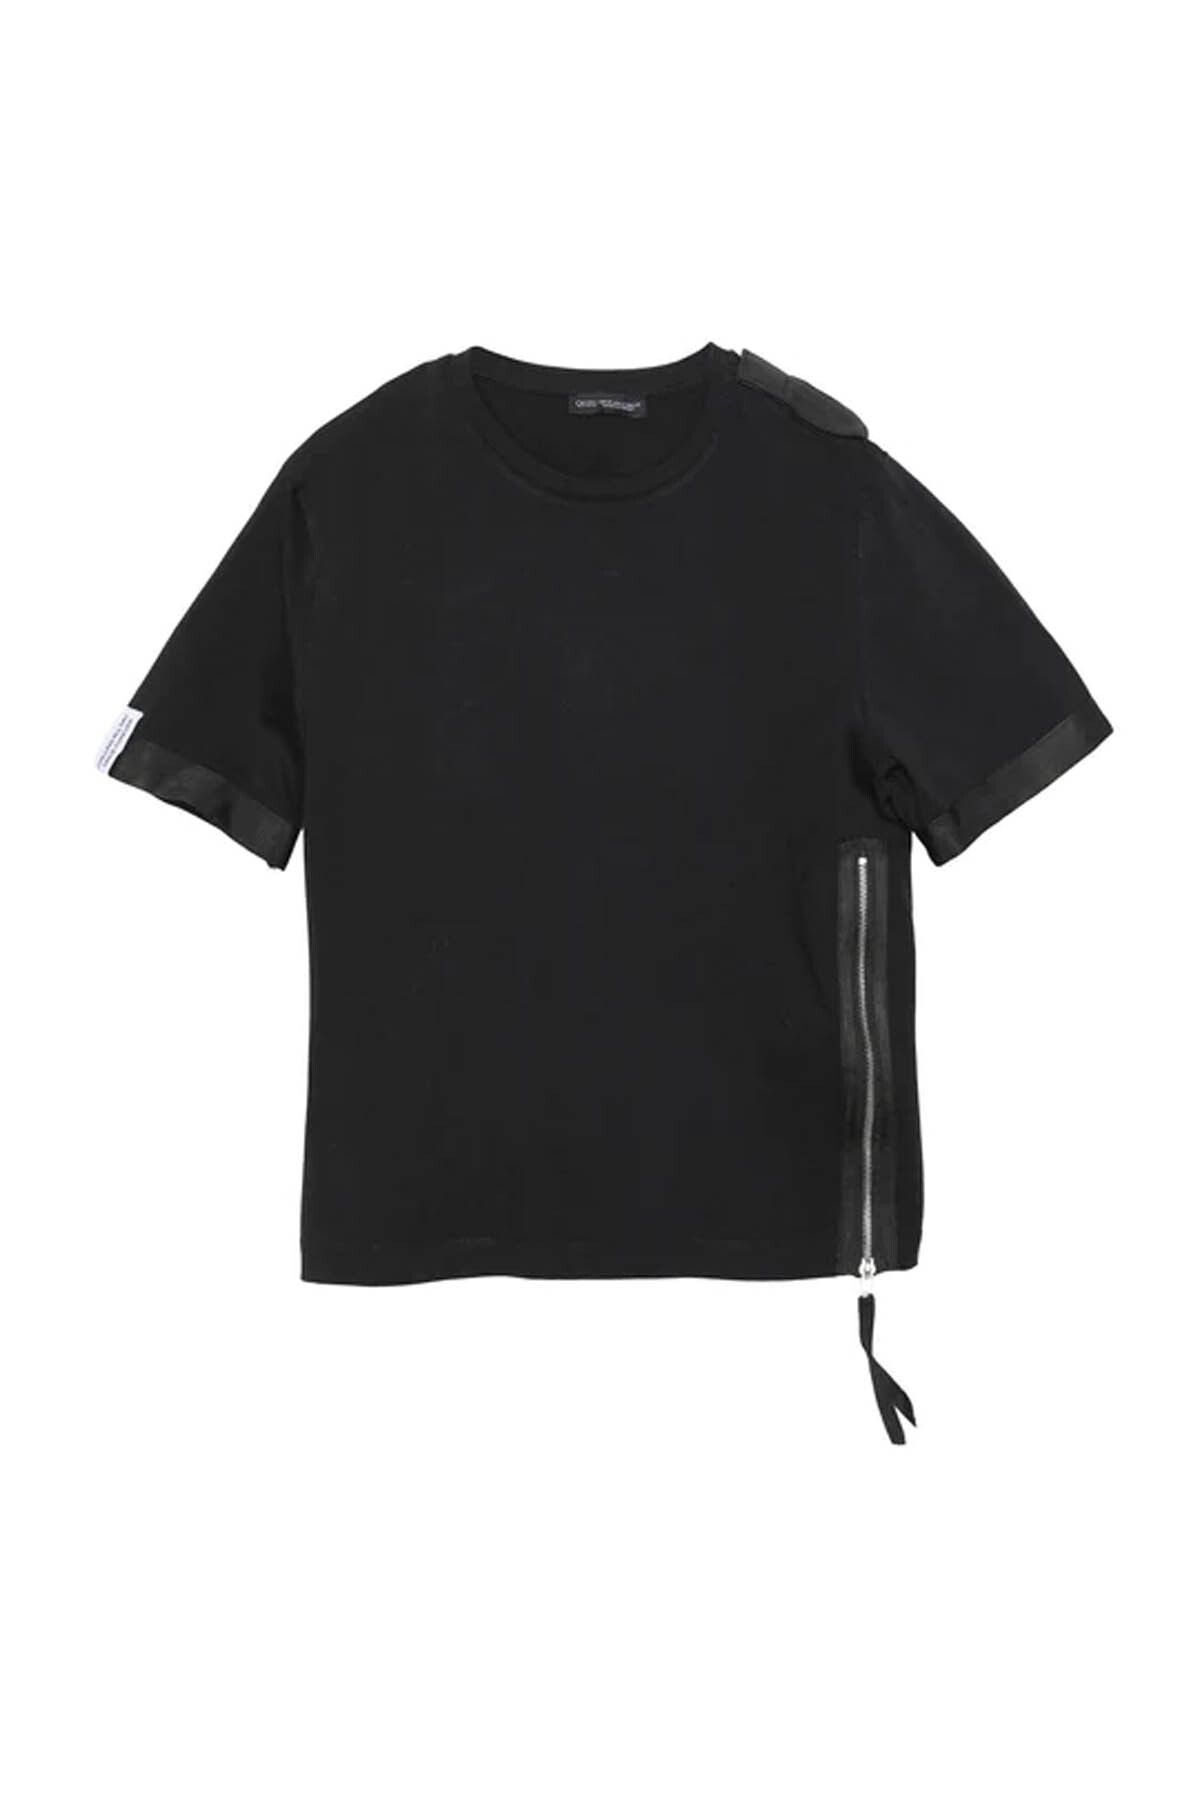 Quzu Kadın T-shirt Siyah 180204